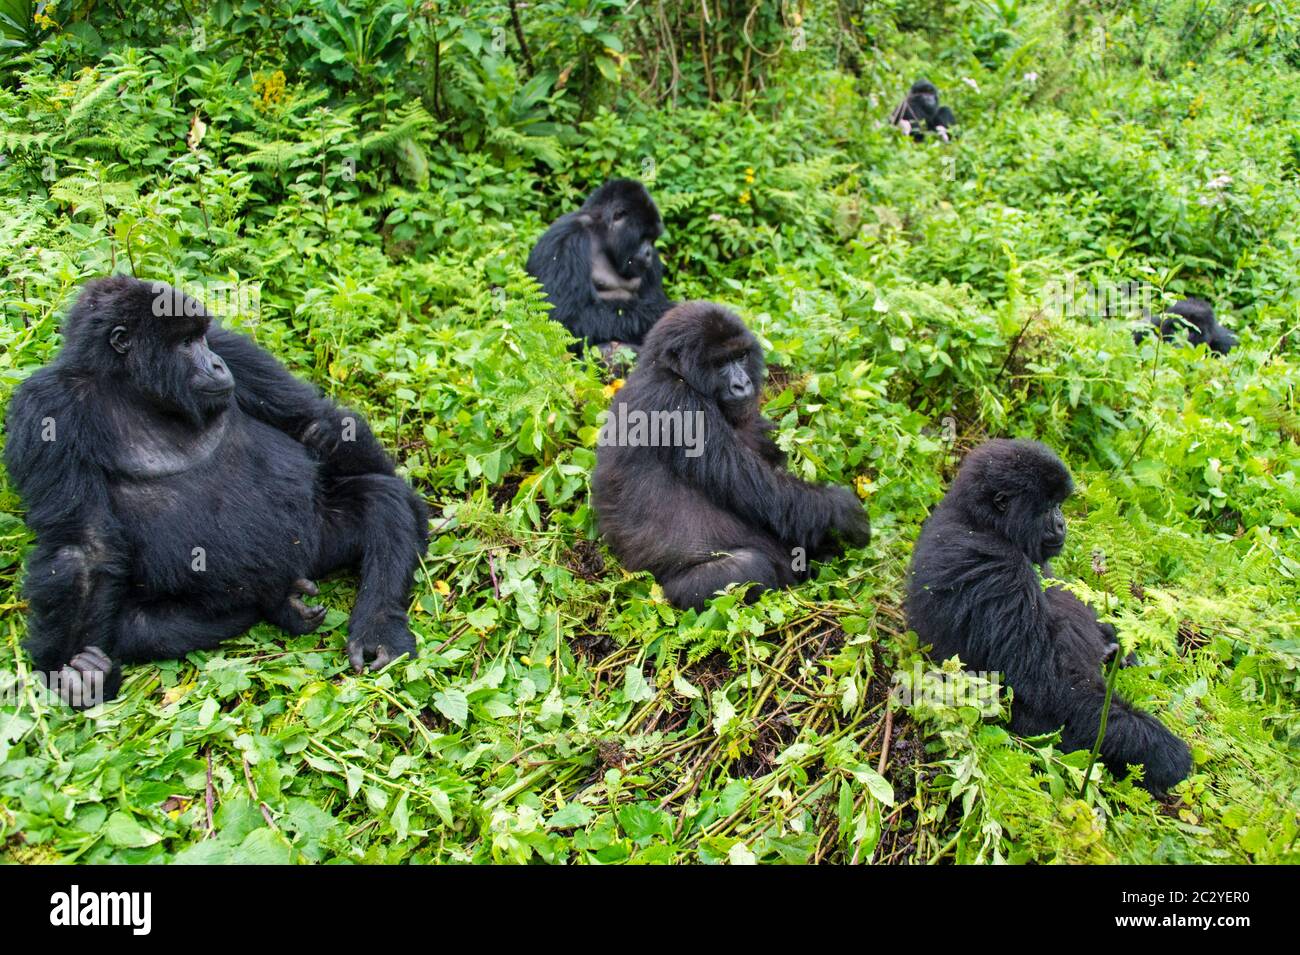 Mountain gorilla group (Gorilla beringei beringei) in greenery, Rwanda, Africa Stock Photo